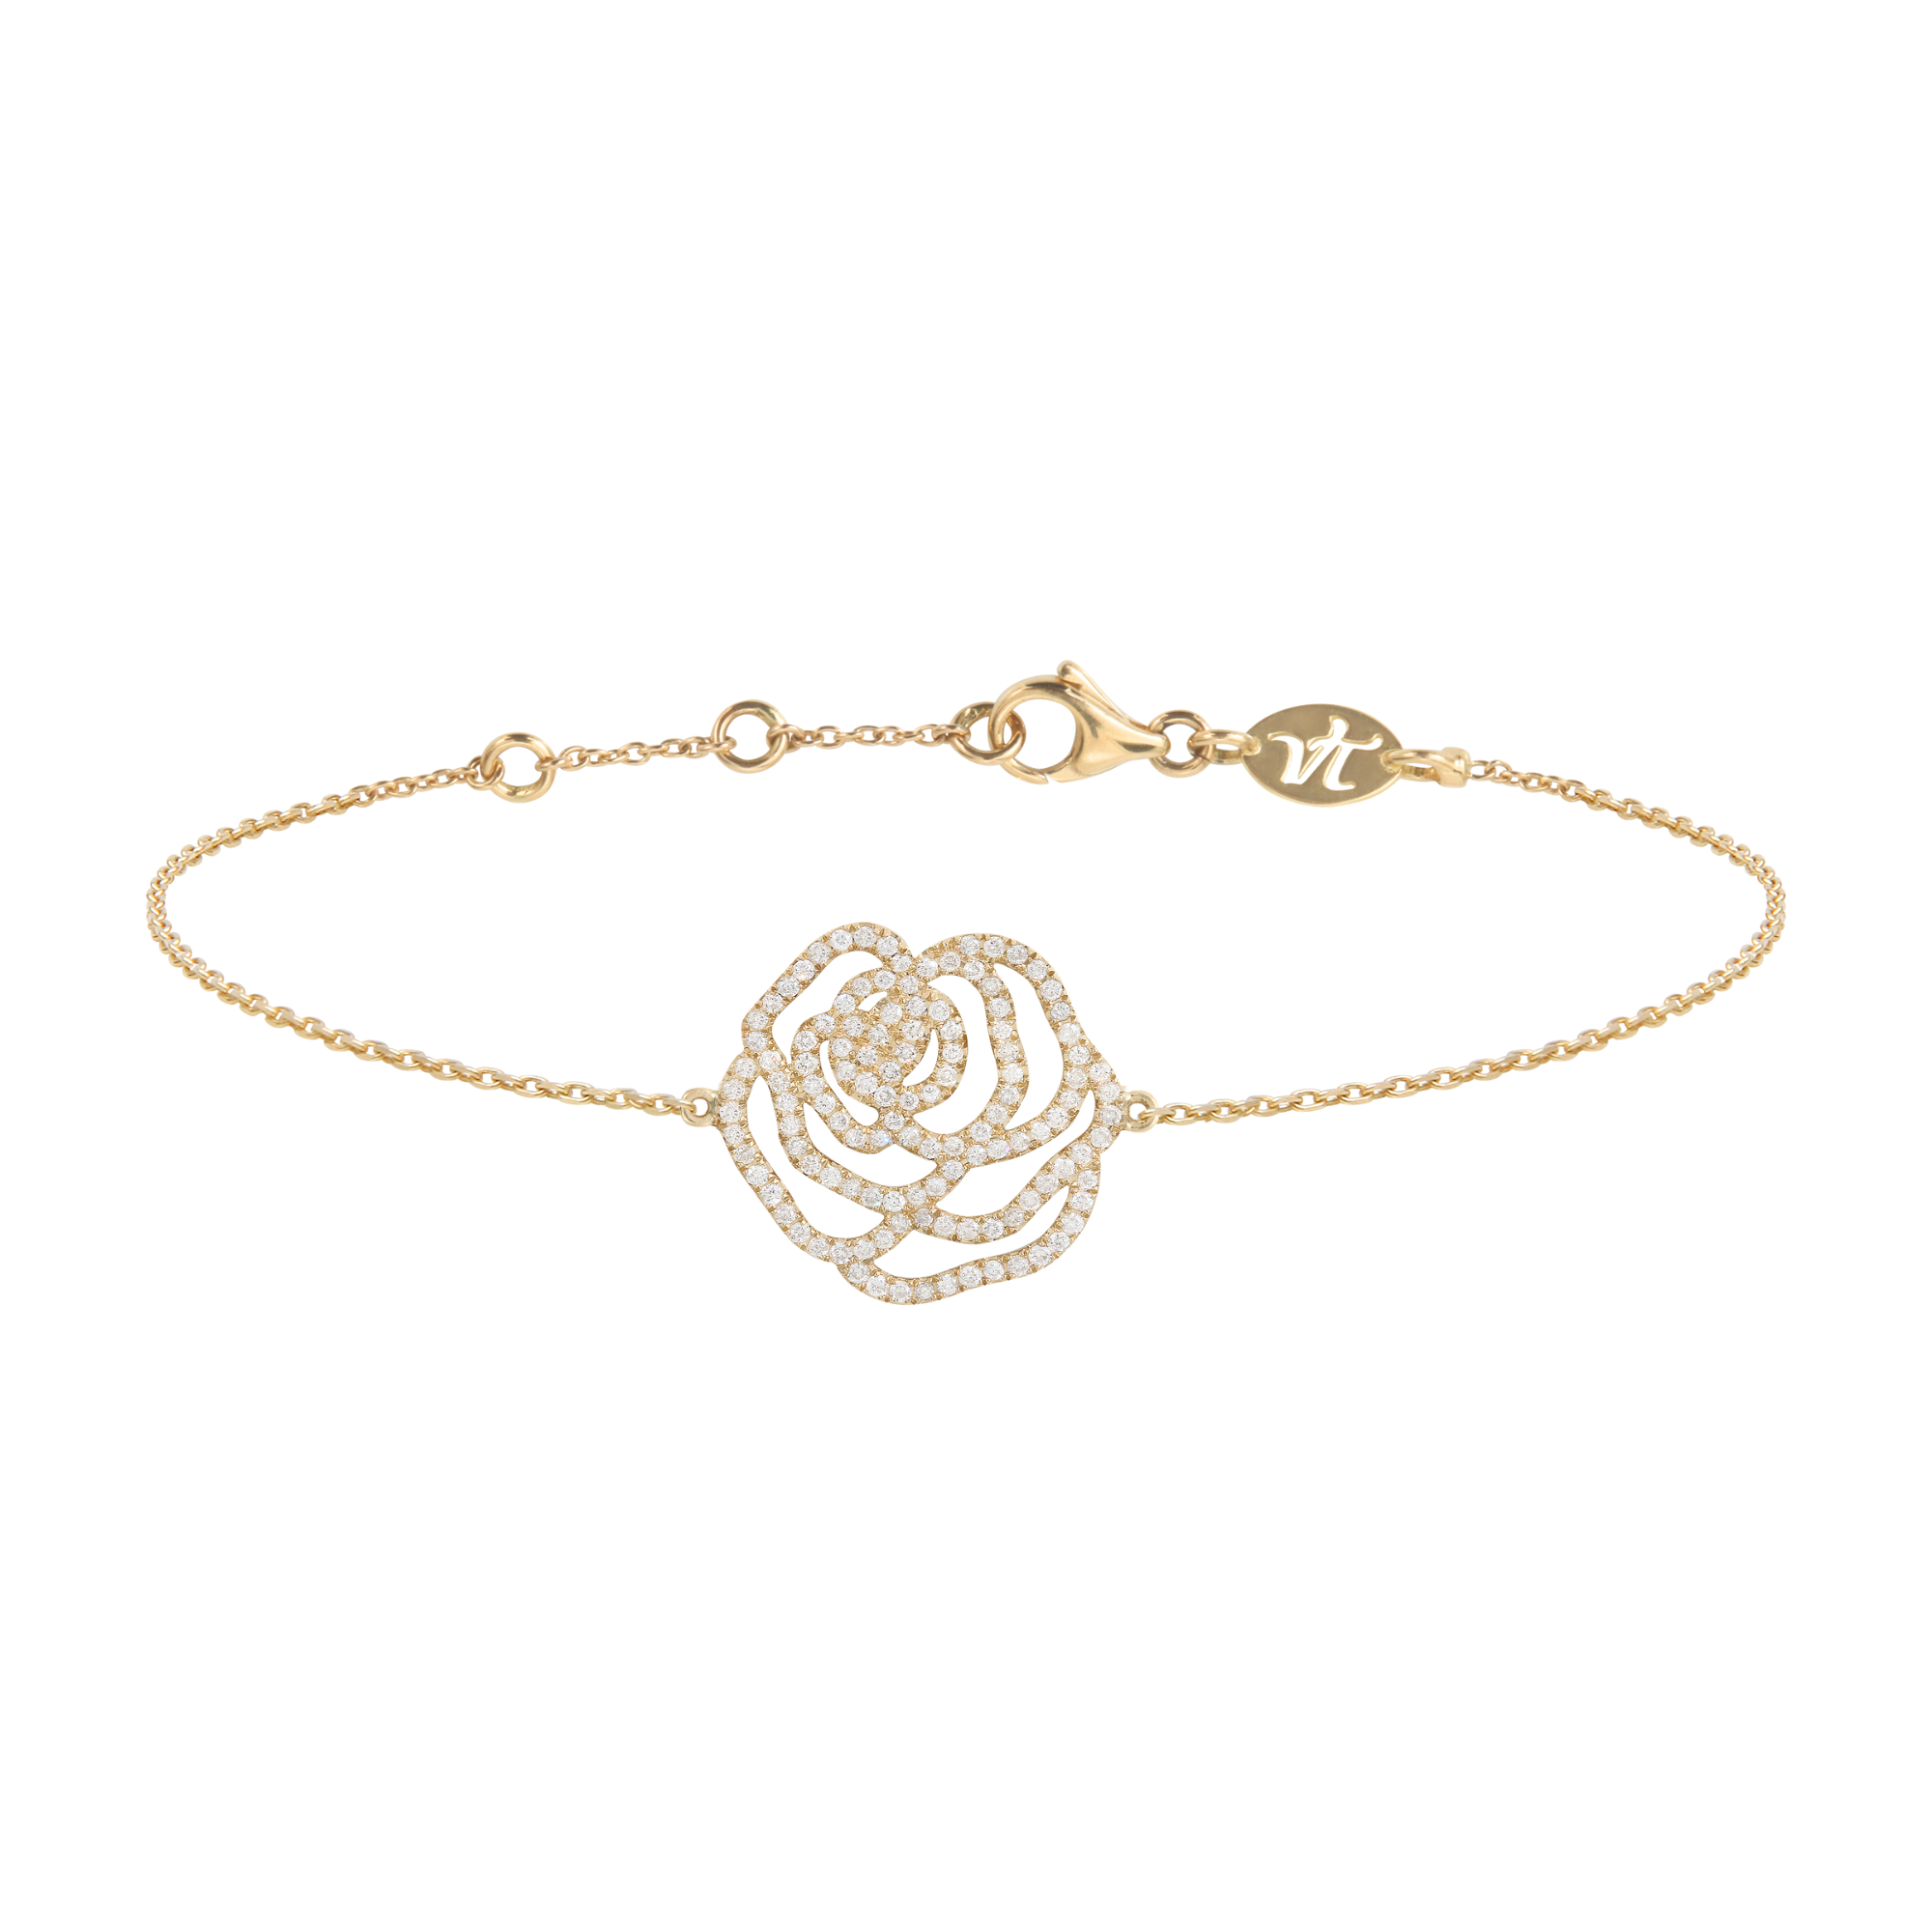 Bracelet d'exception fleur la rose en or jaune et diamants pour femme. Fabriqué en France, ce bijou élégant et raffiné de joaillerie fine est très prisé des célébrités et est un cadeau de Noël, d'anniversaire ou de naissance idéal.